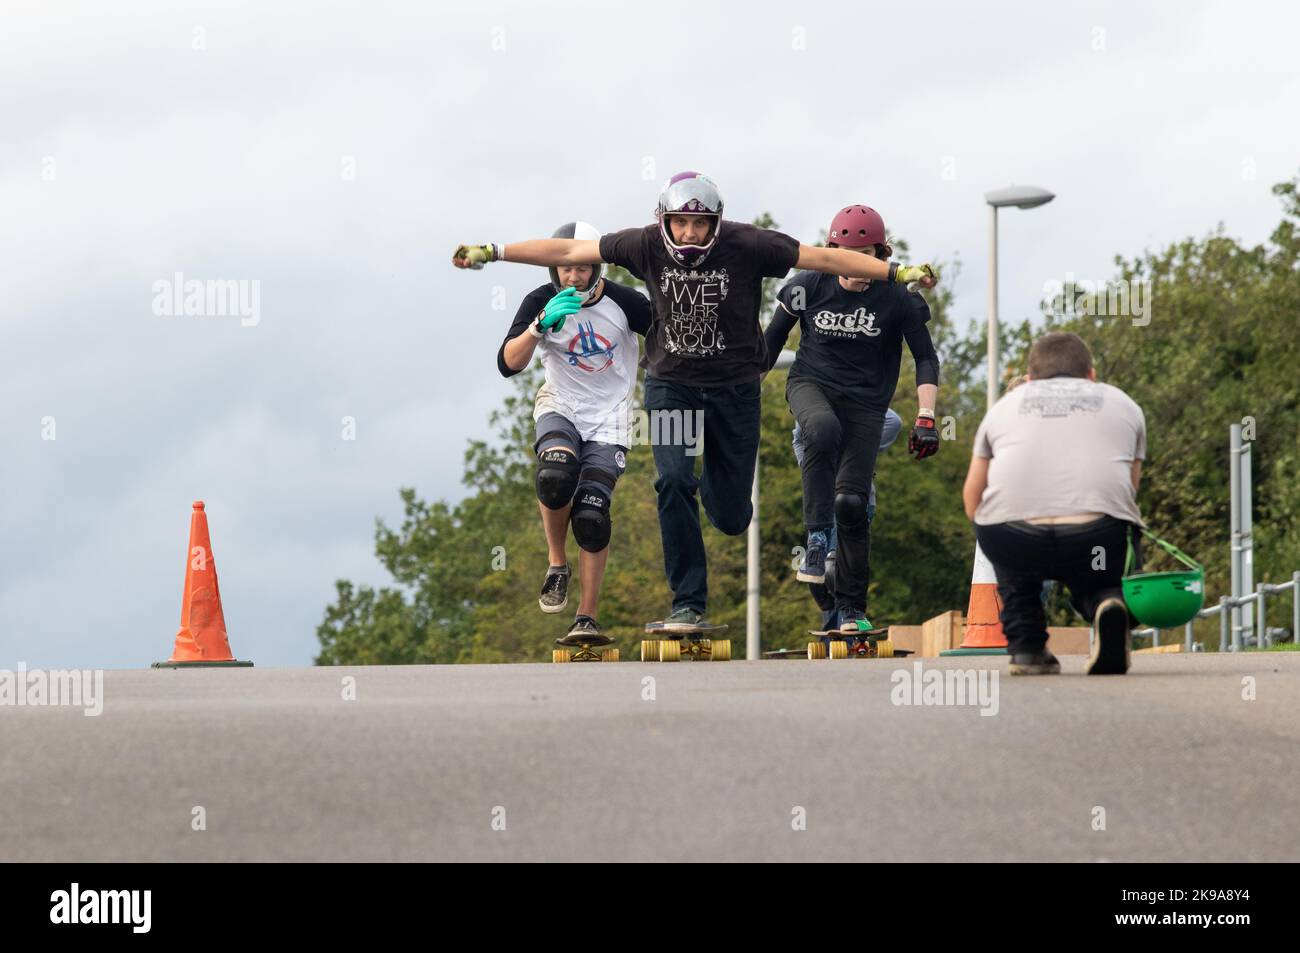 Les skateboarders pagayent pour commencer une descente tout en étant photographiés Banque D'Images